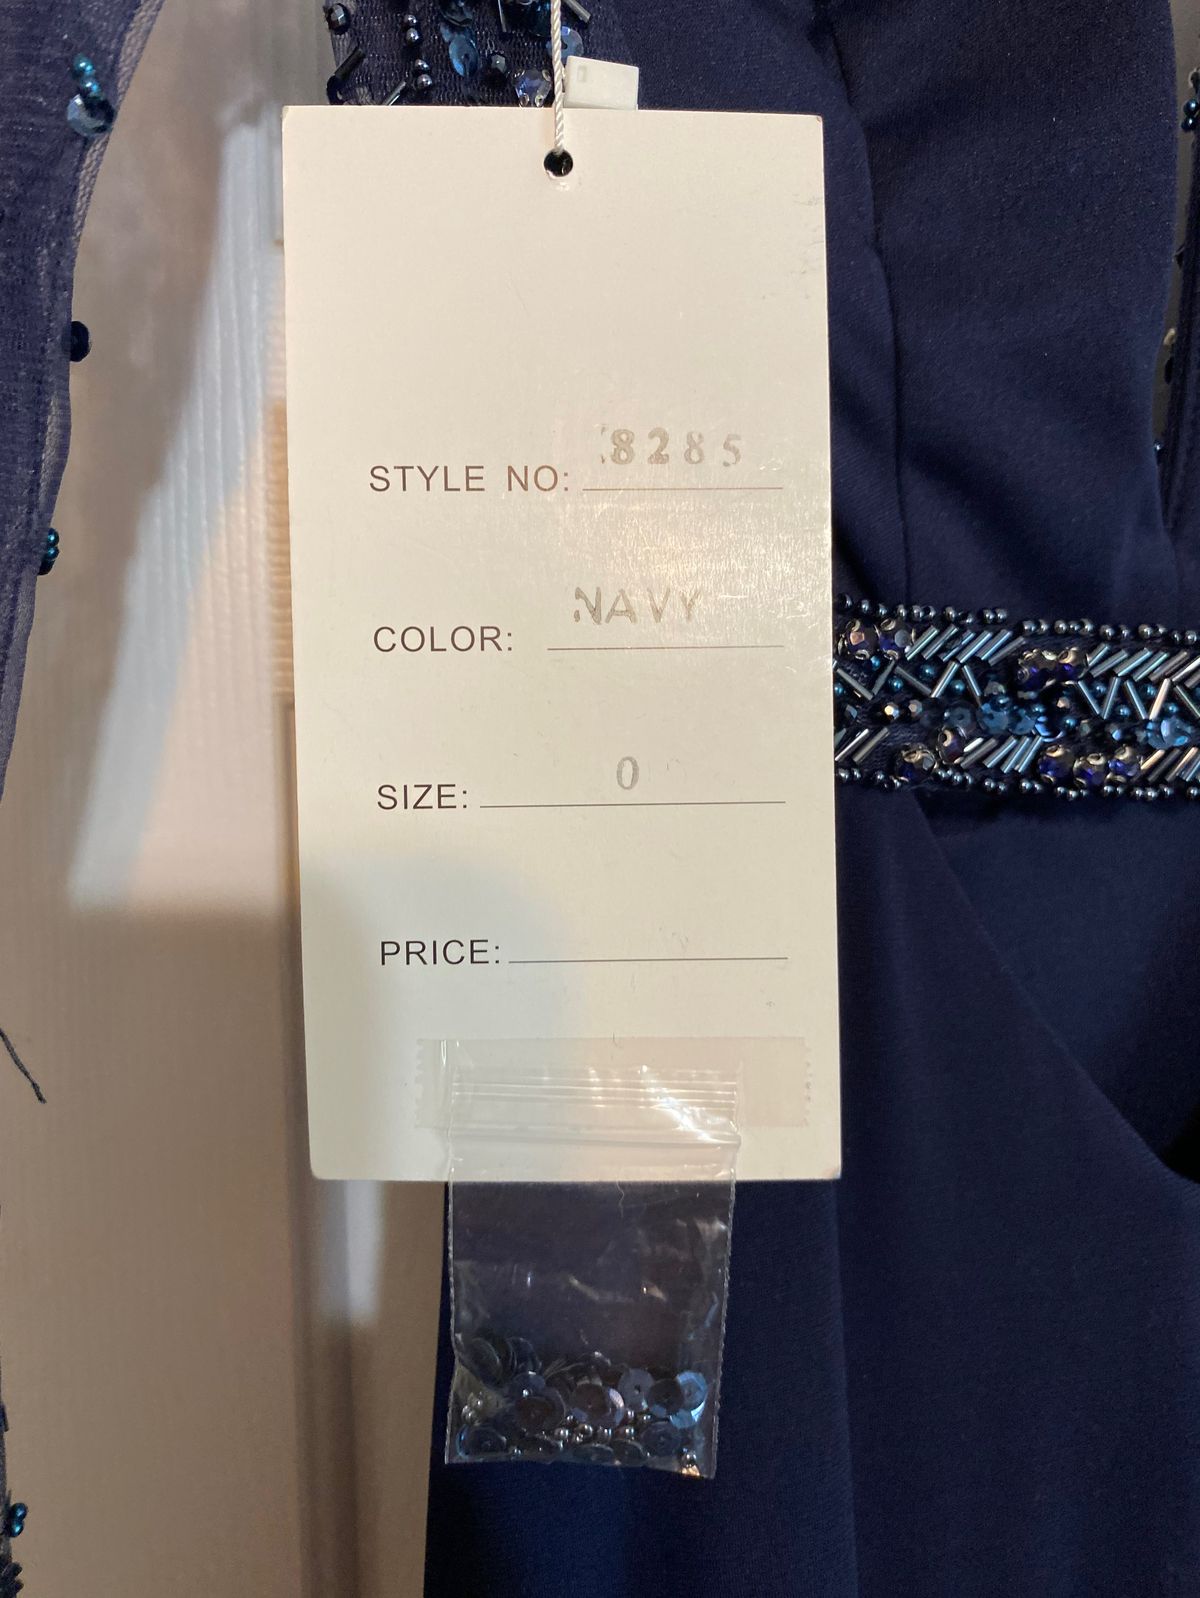 Style 8285 Rachel Allan Size 0 Long Sleeve Navy Blue Side Slit Dress on Queenly